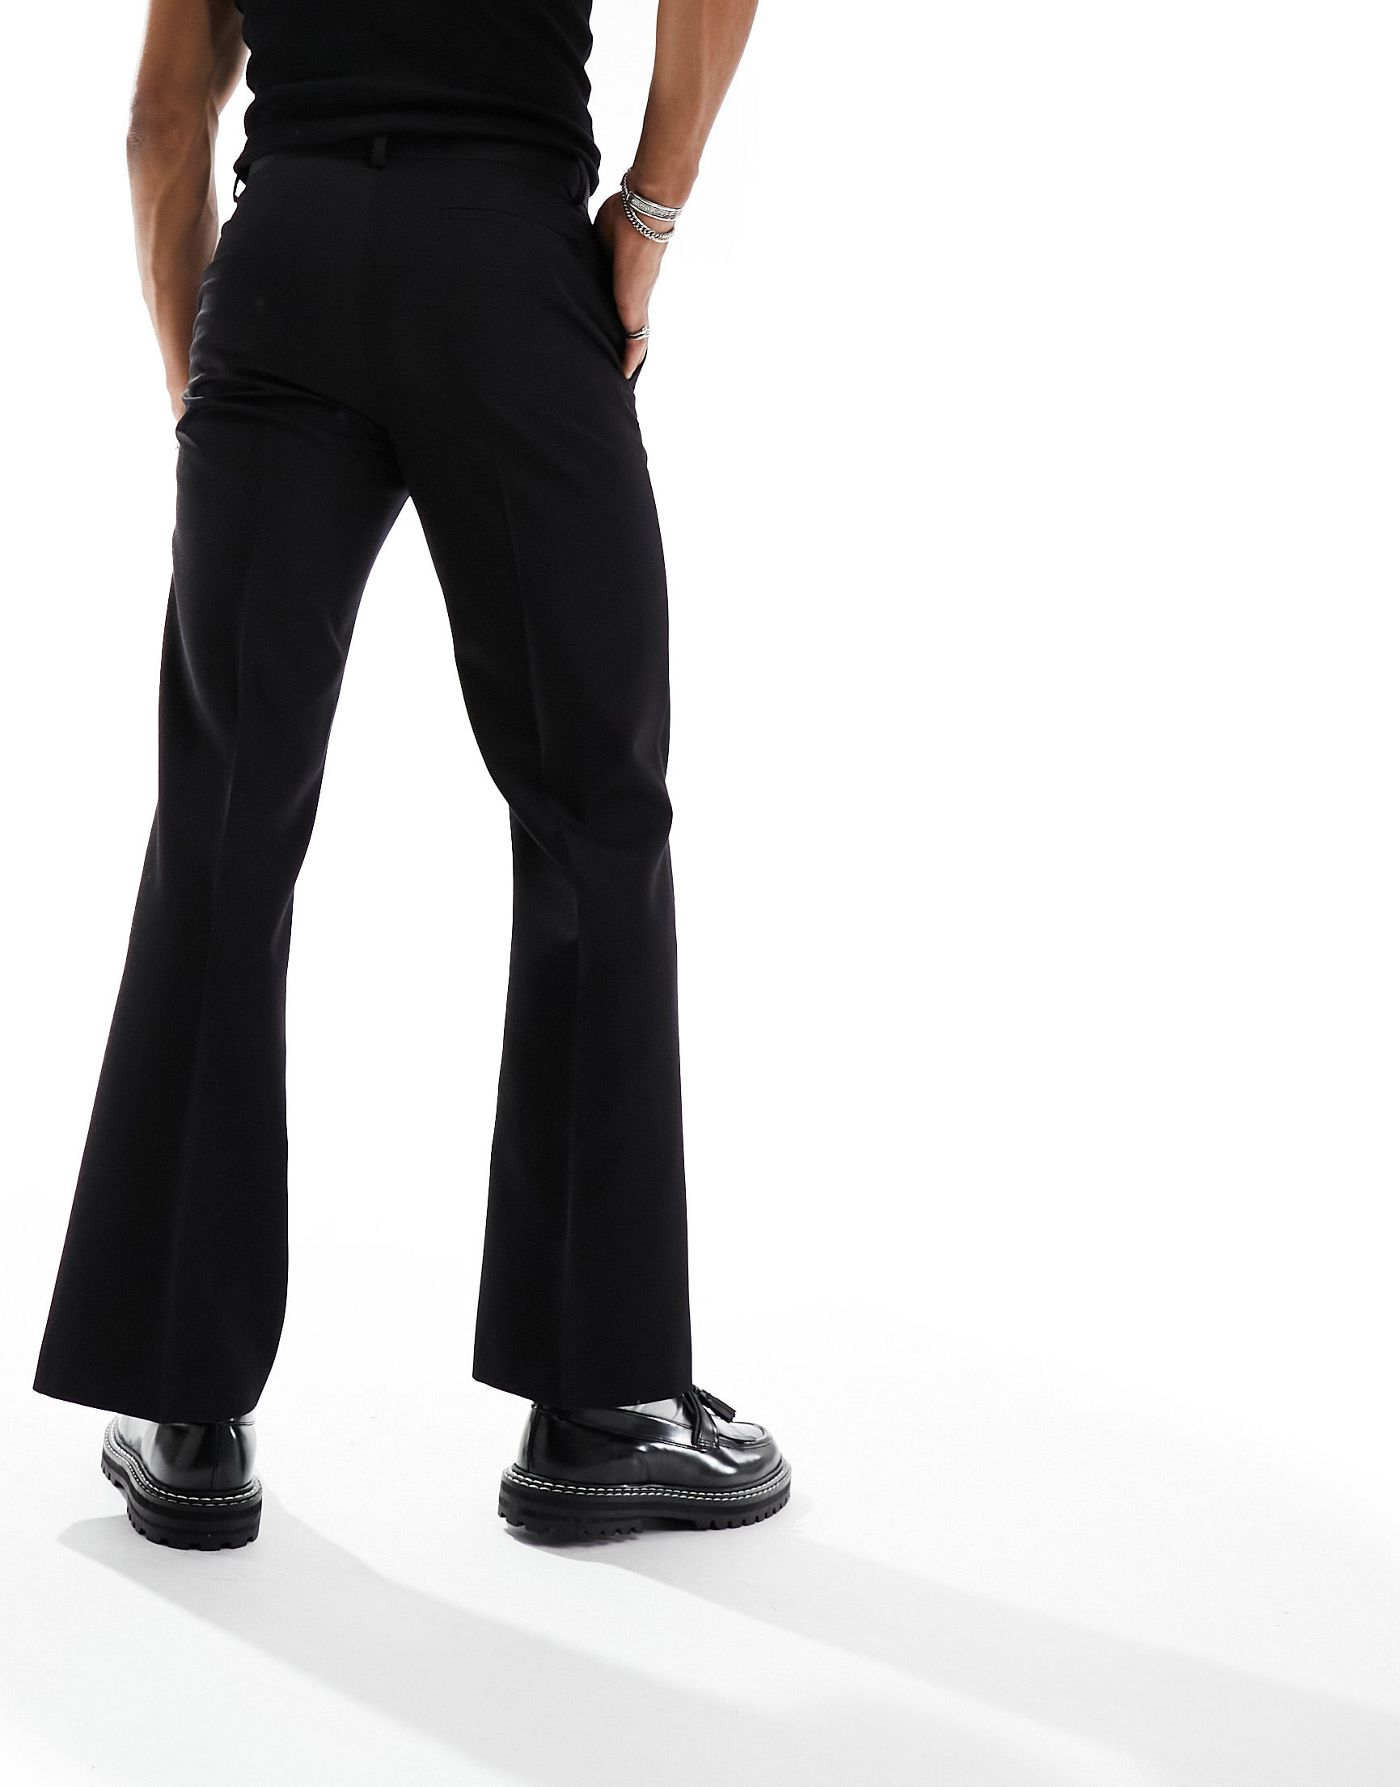 ASOS DESIGN flared smart trouser in black